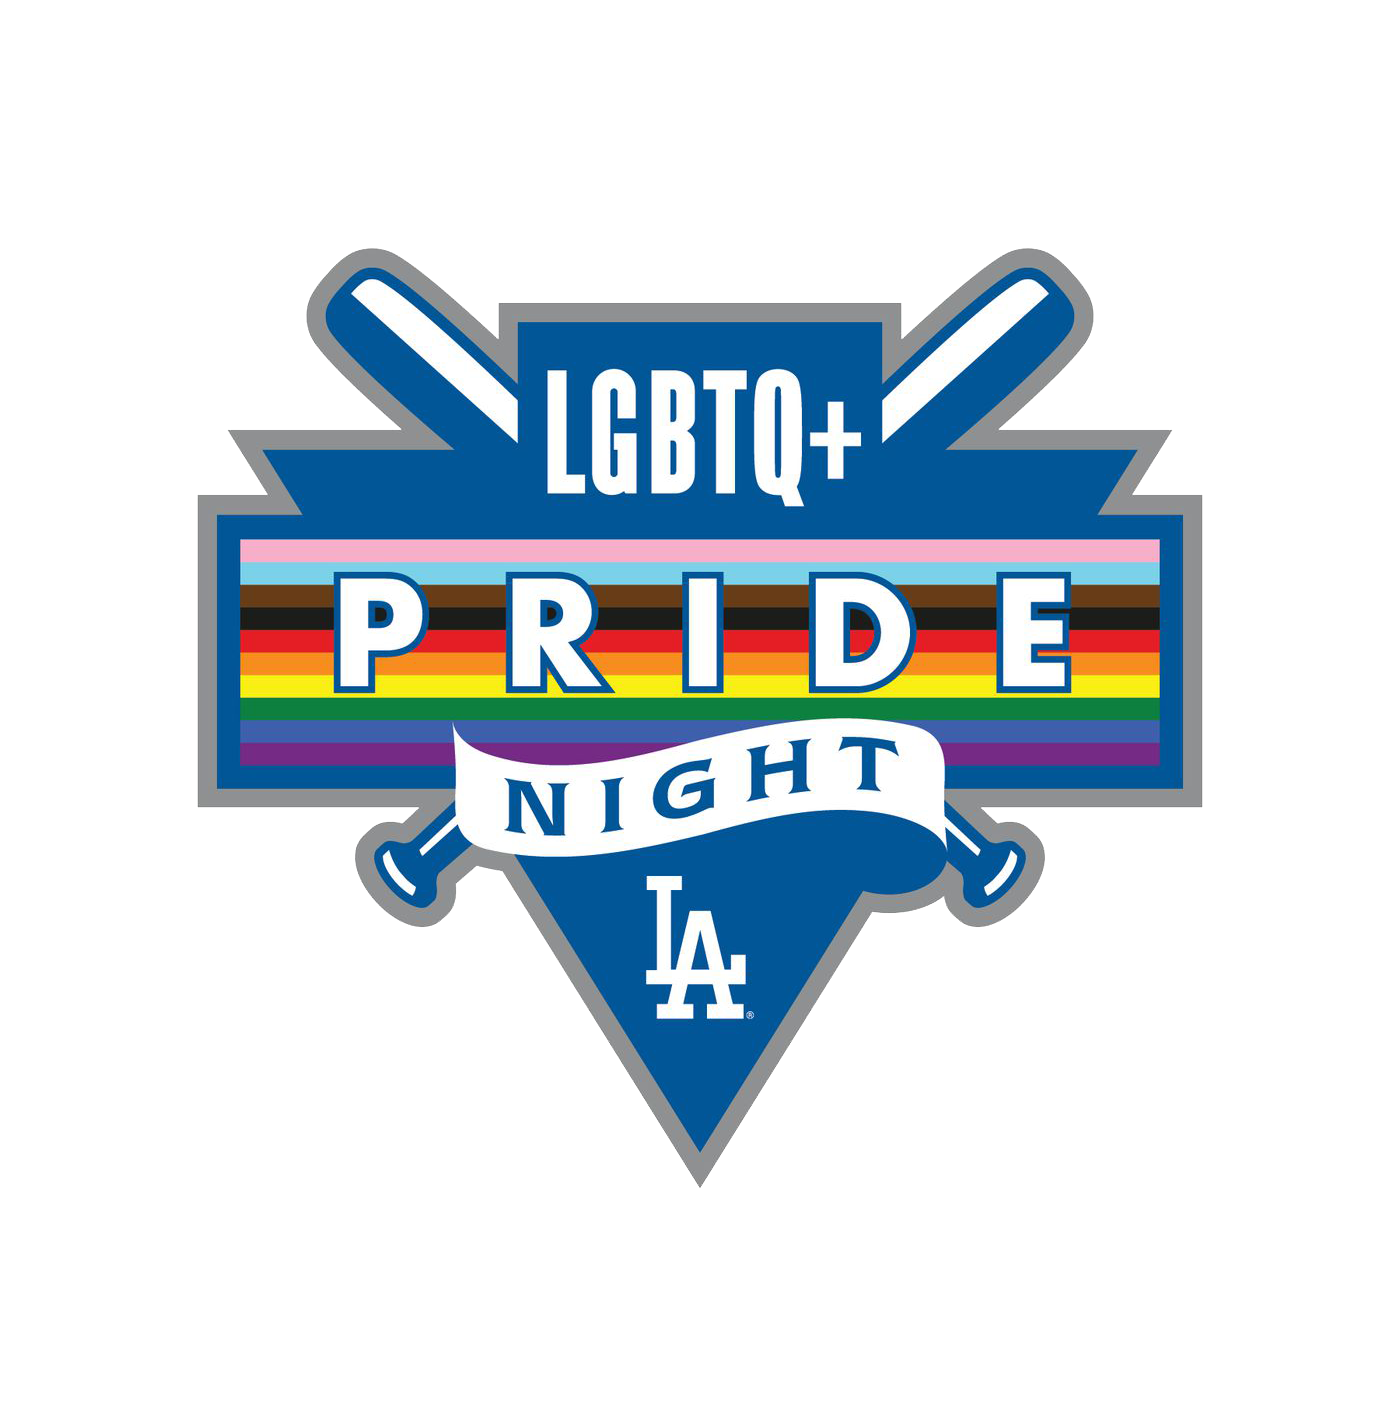 LA dodgers LGBTQ+ pride night